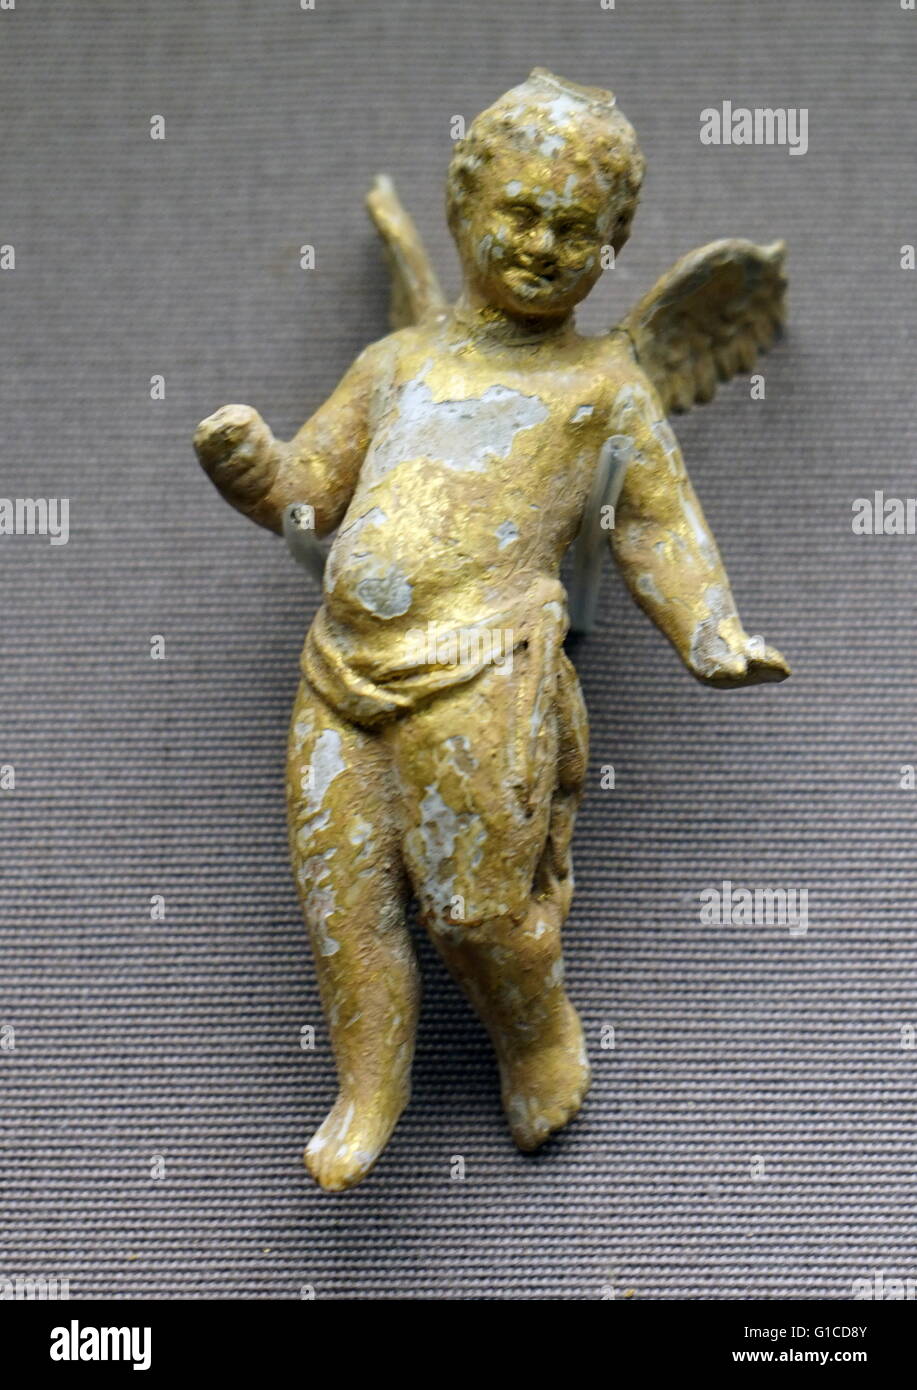 Bemalte und vergoldete Terrakotta-Figur des Eros, der griechische Gott der Liebe auf der Flucht. 200 v. Chr. datiert Stockfoto